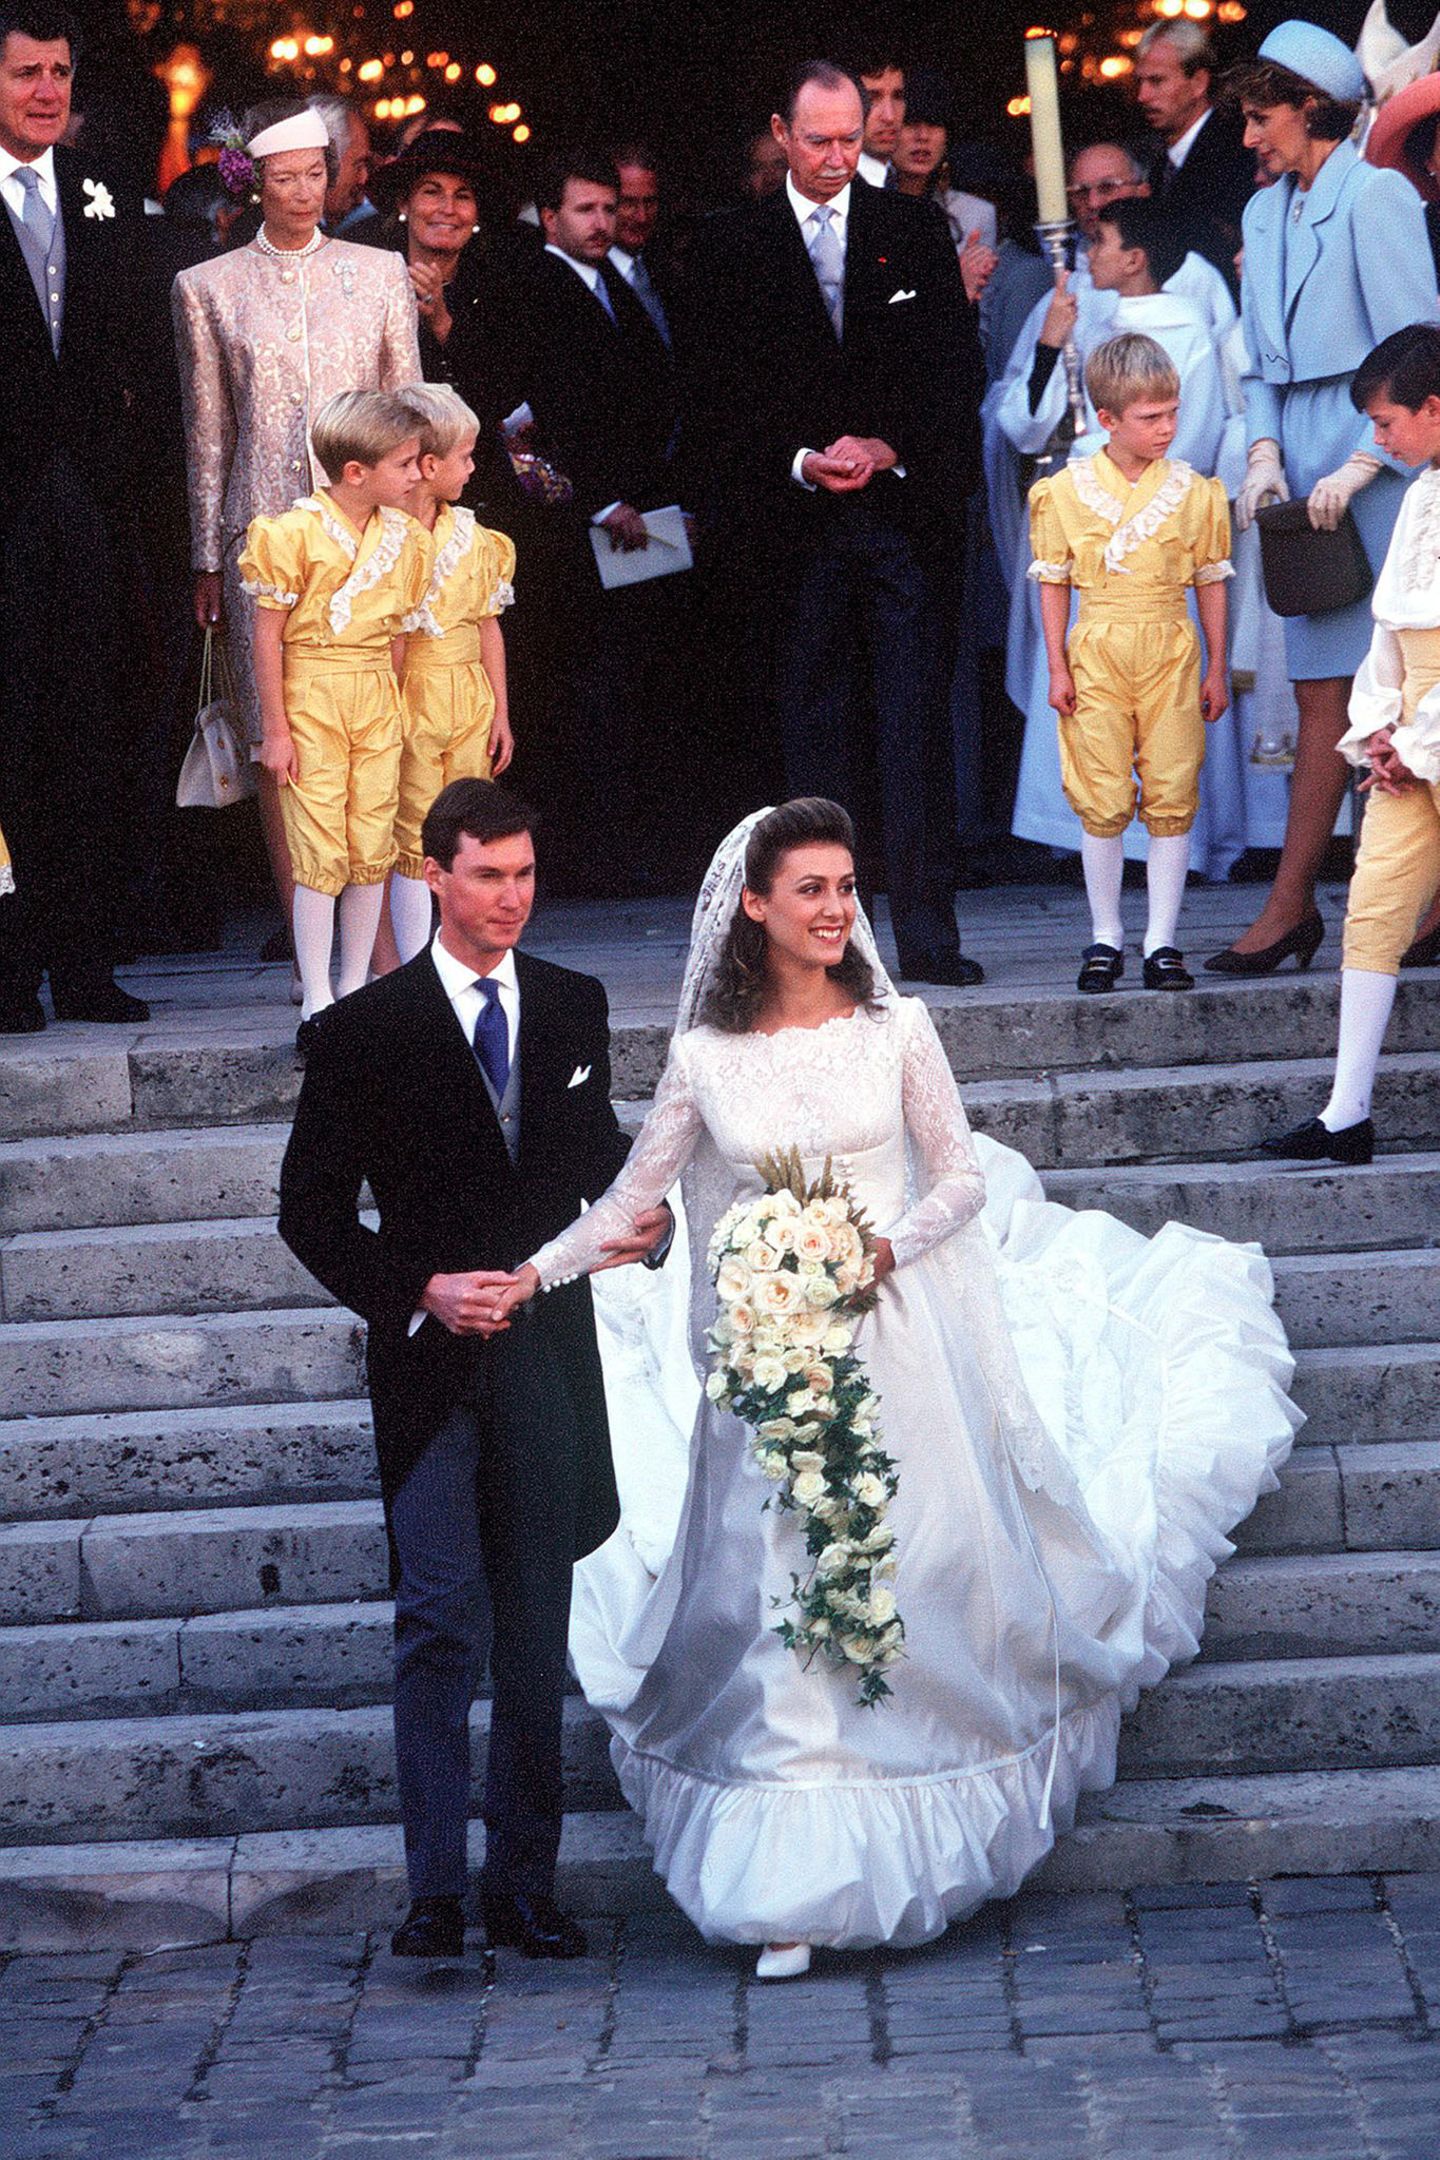 Am 24. September 1994 heiratet Prinz Guillaume von Luxemburg in Versailles seine Verlobte Sibilla Weiller, die in einem Brautkleid aus Satin, Spitze und mit gerafftem Saum sowie einem Schleier aus Spitze ihren Mann und die Hochzeitsgäste verzaubert. Guillaume ist der Bruder des amtierenden Großherzog Henri und mit seiner Frau eher selten im Auftrag des Fürstenhaus in der Öffentlichkeit zu sehen.